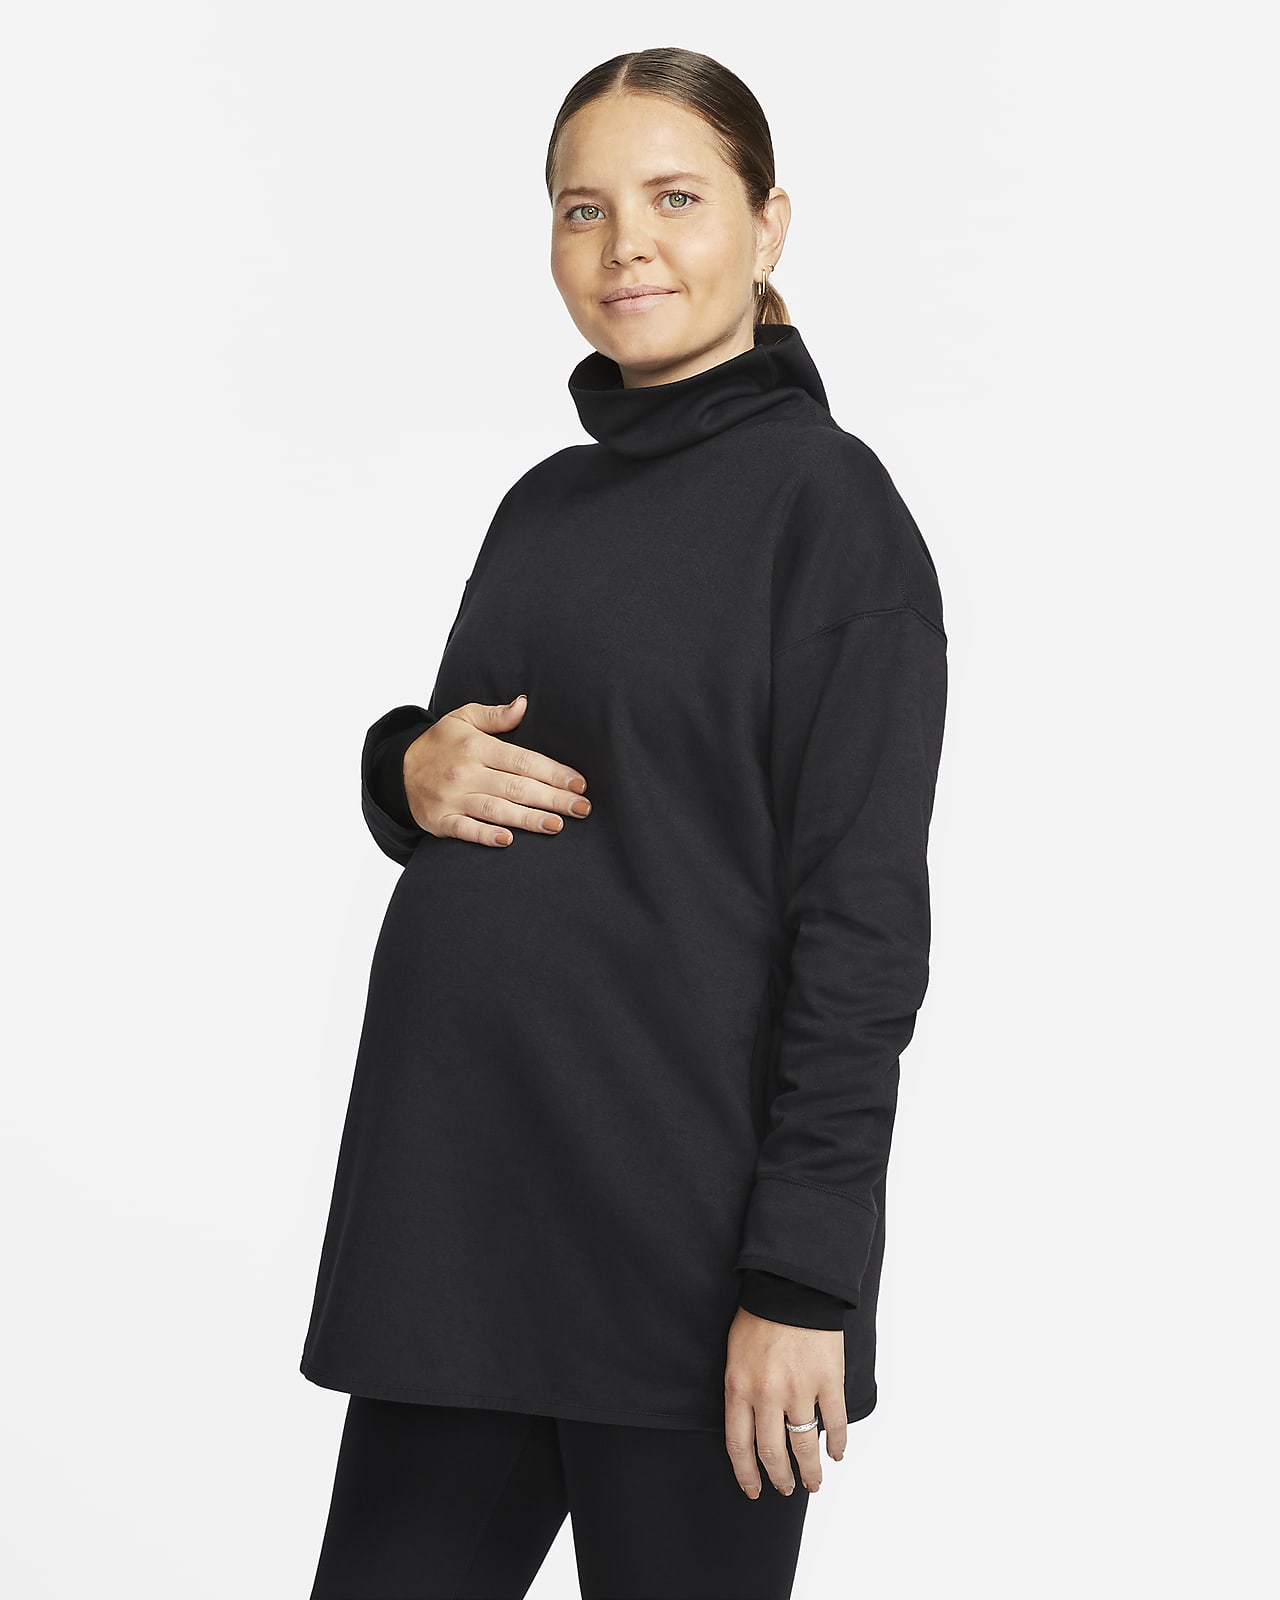 Nike (M) Convertible Diaper Bag (Maternity) (25L).